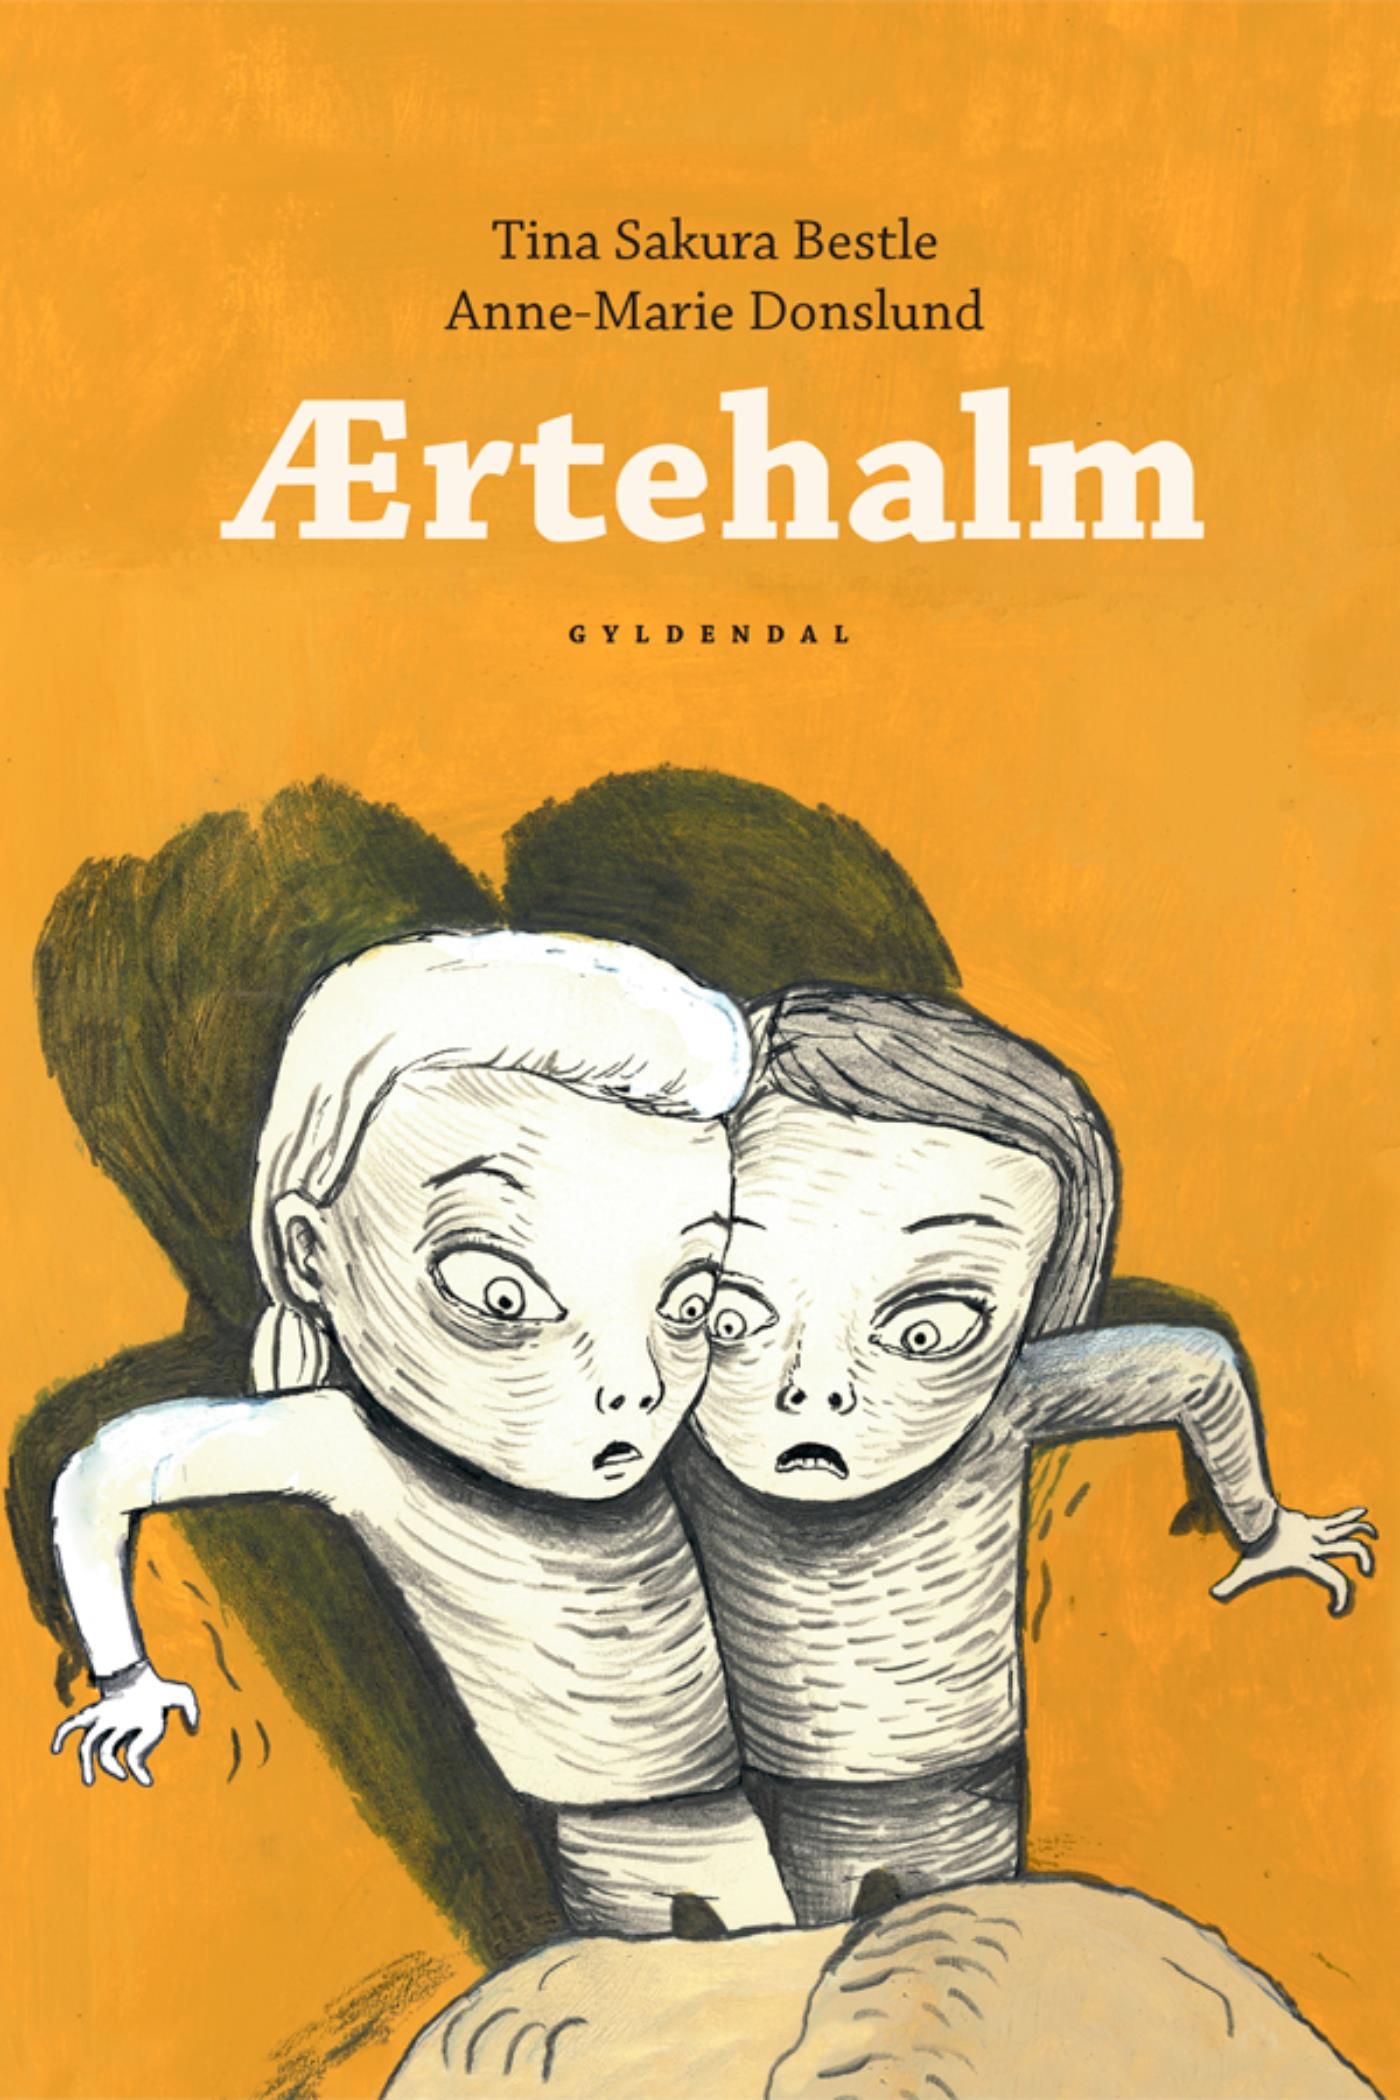 Ærtehalm 1 - Ærtehalm, eBook by Anne-Marie Donslund, Tina Sakura Bestle